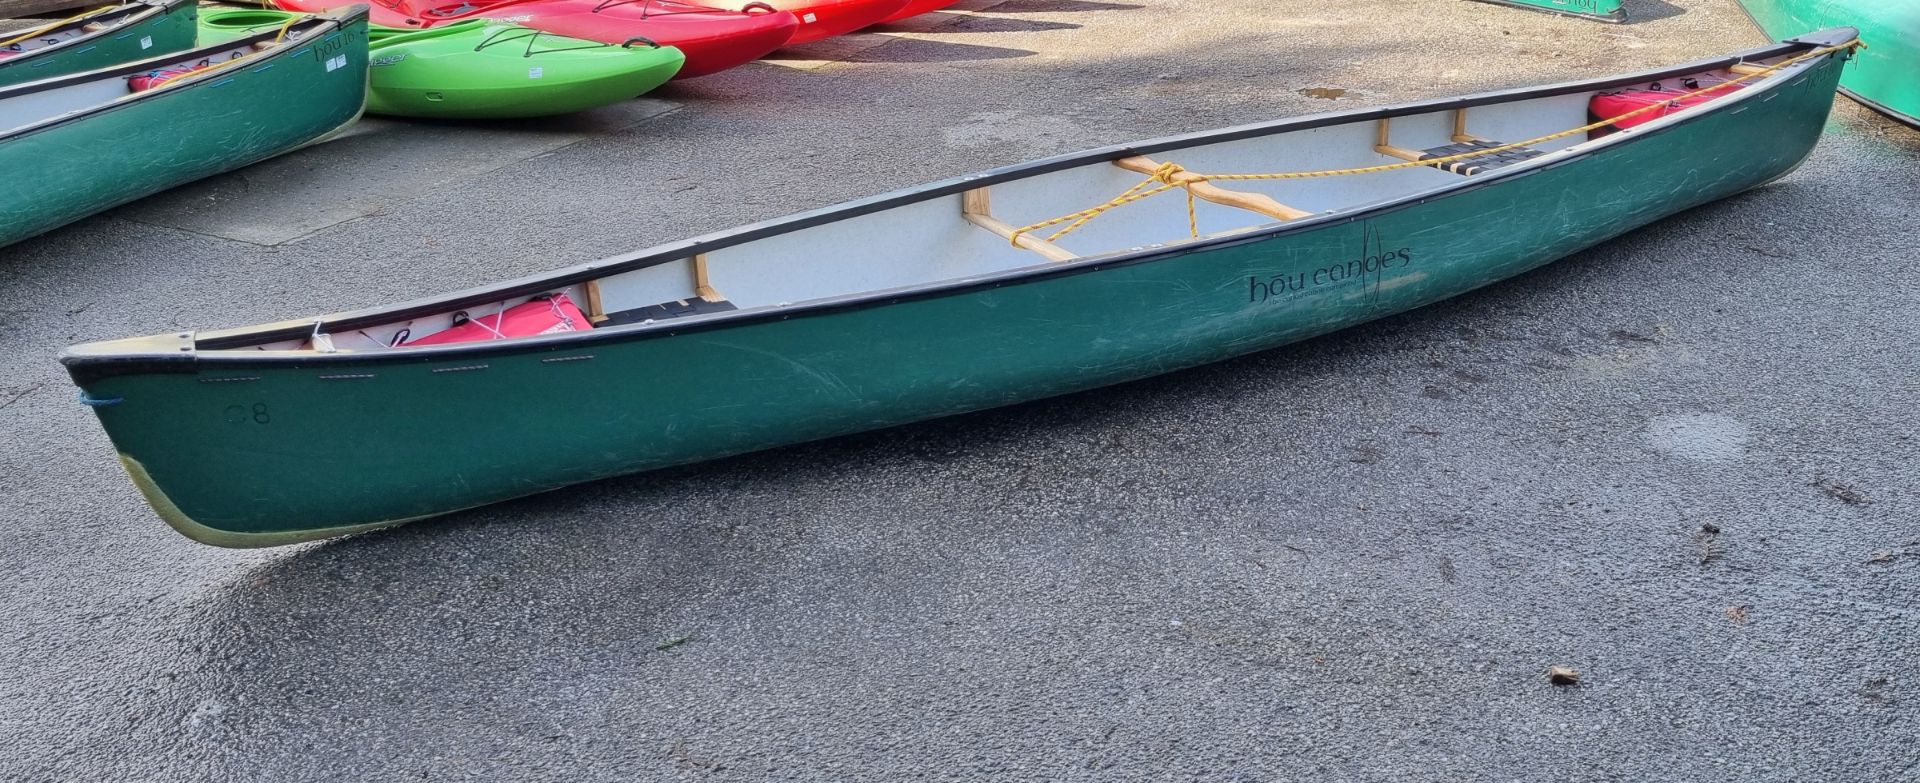 HOU Canoes HOU16 Open canoe - W 4900 x D 920 x H 370mm